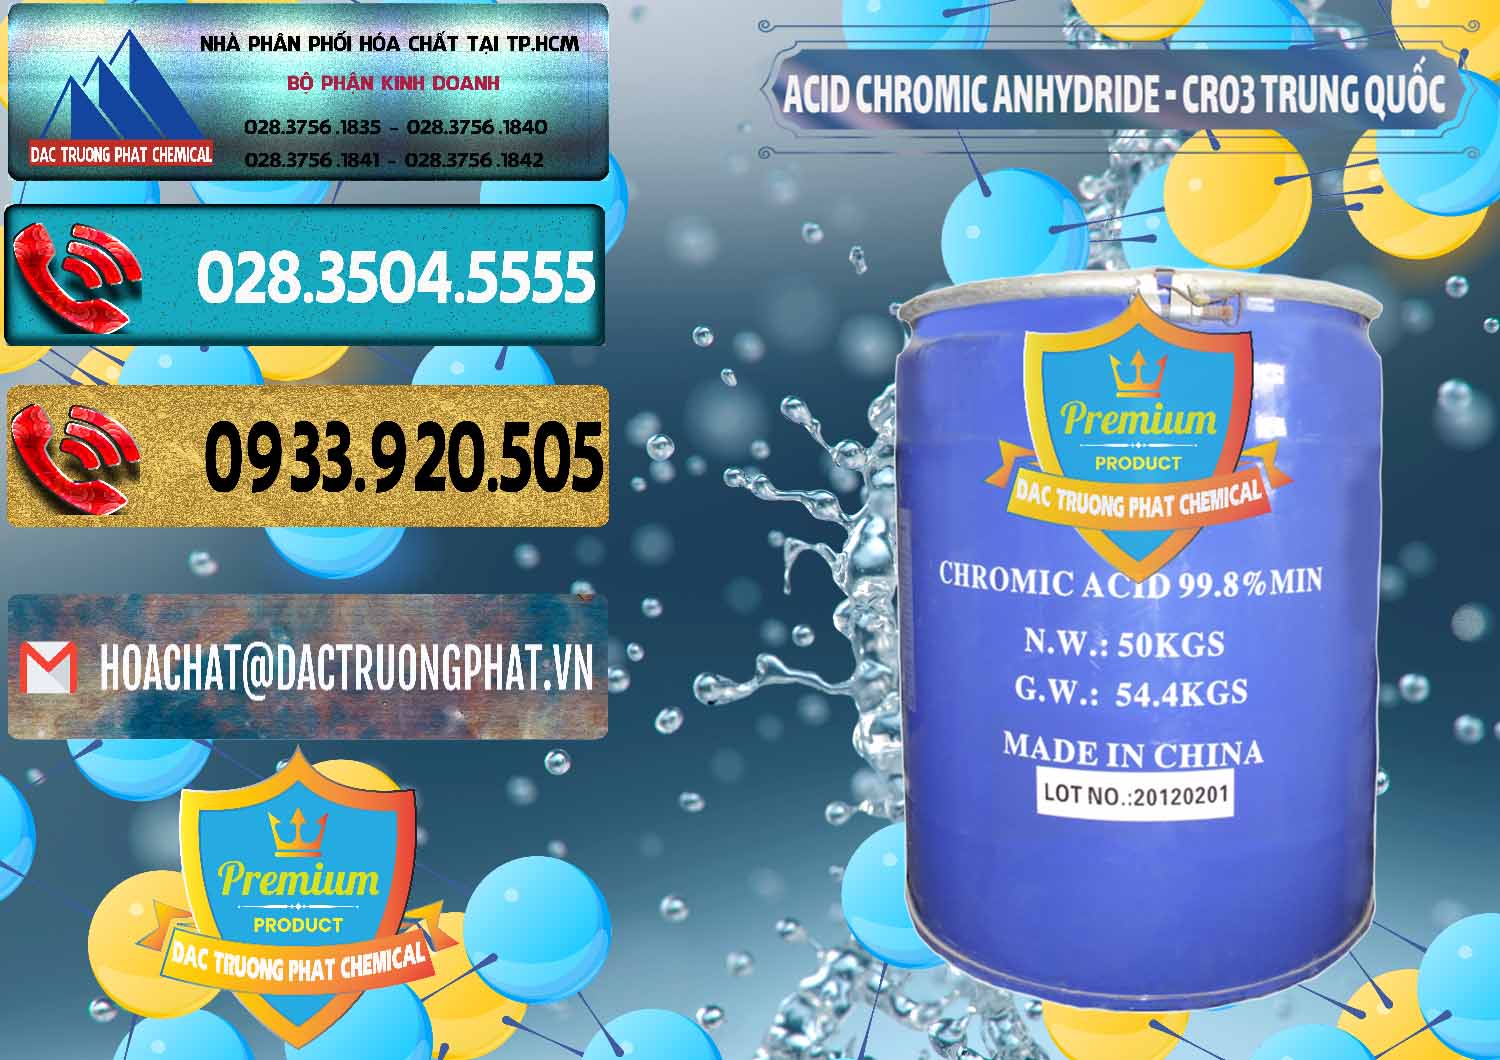 Công ty chuyên phân phối - bán Acid Chromic Anhydride - Cromic CRO3 Trung Quốc China - 0007 - Nơi phân phối _ kinh doanh hóa chất tại TP.HCM - hoachatdetnhuom.com